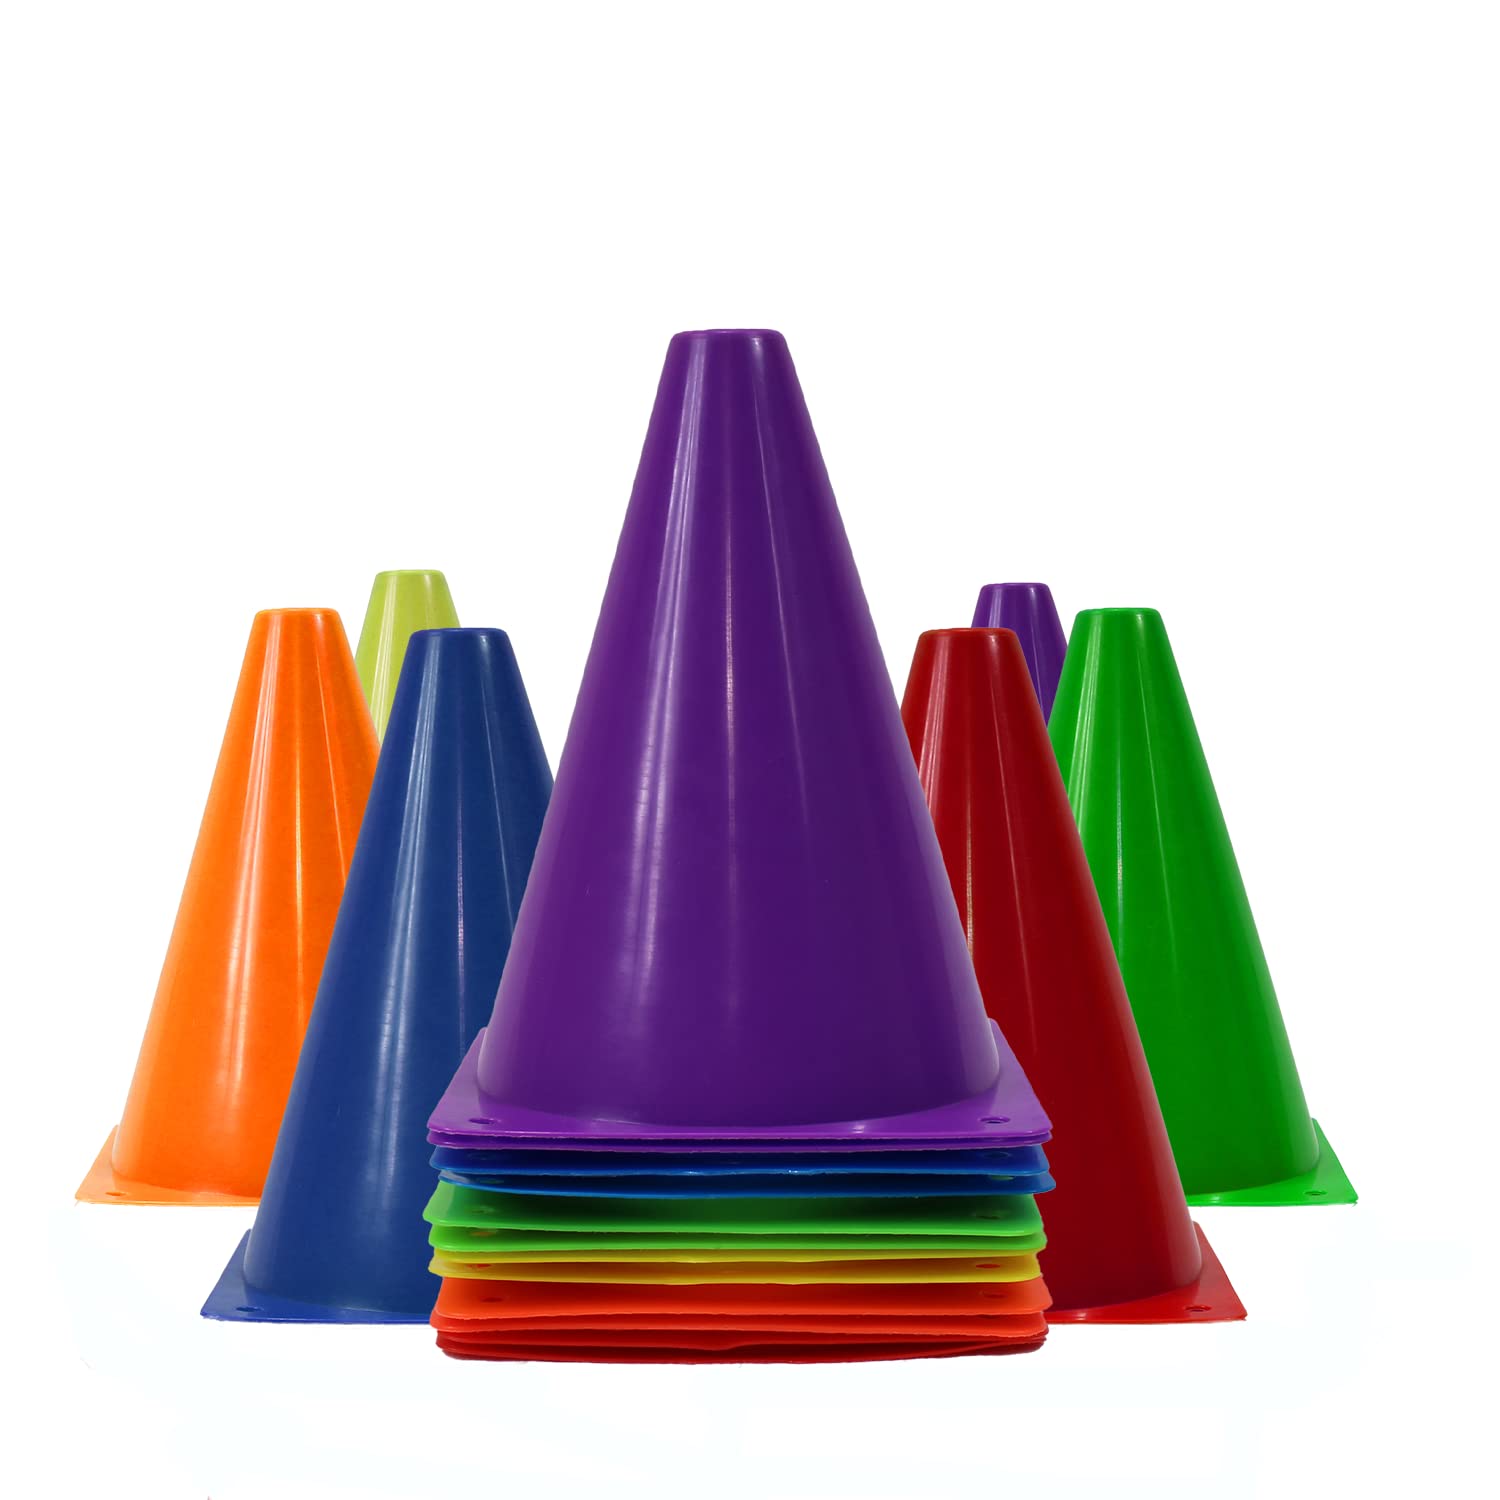 Dazzling Toys 7 Plastic Traffic Cones - 6 Pack of 7 Multipurpose